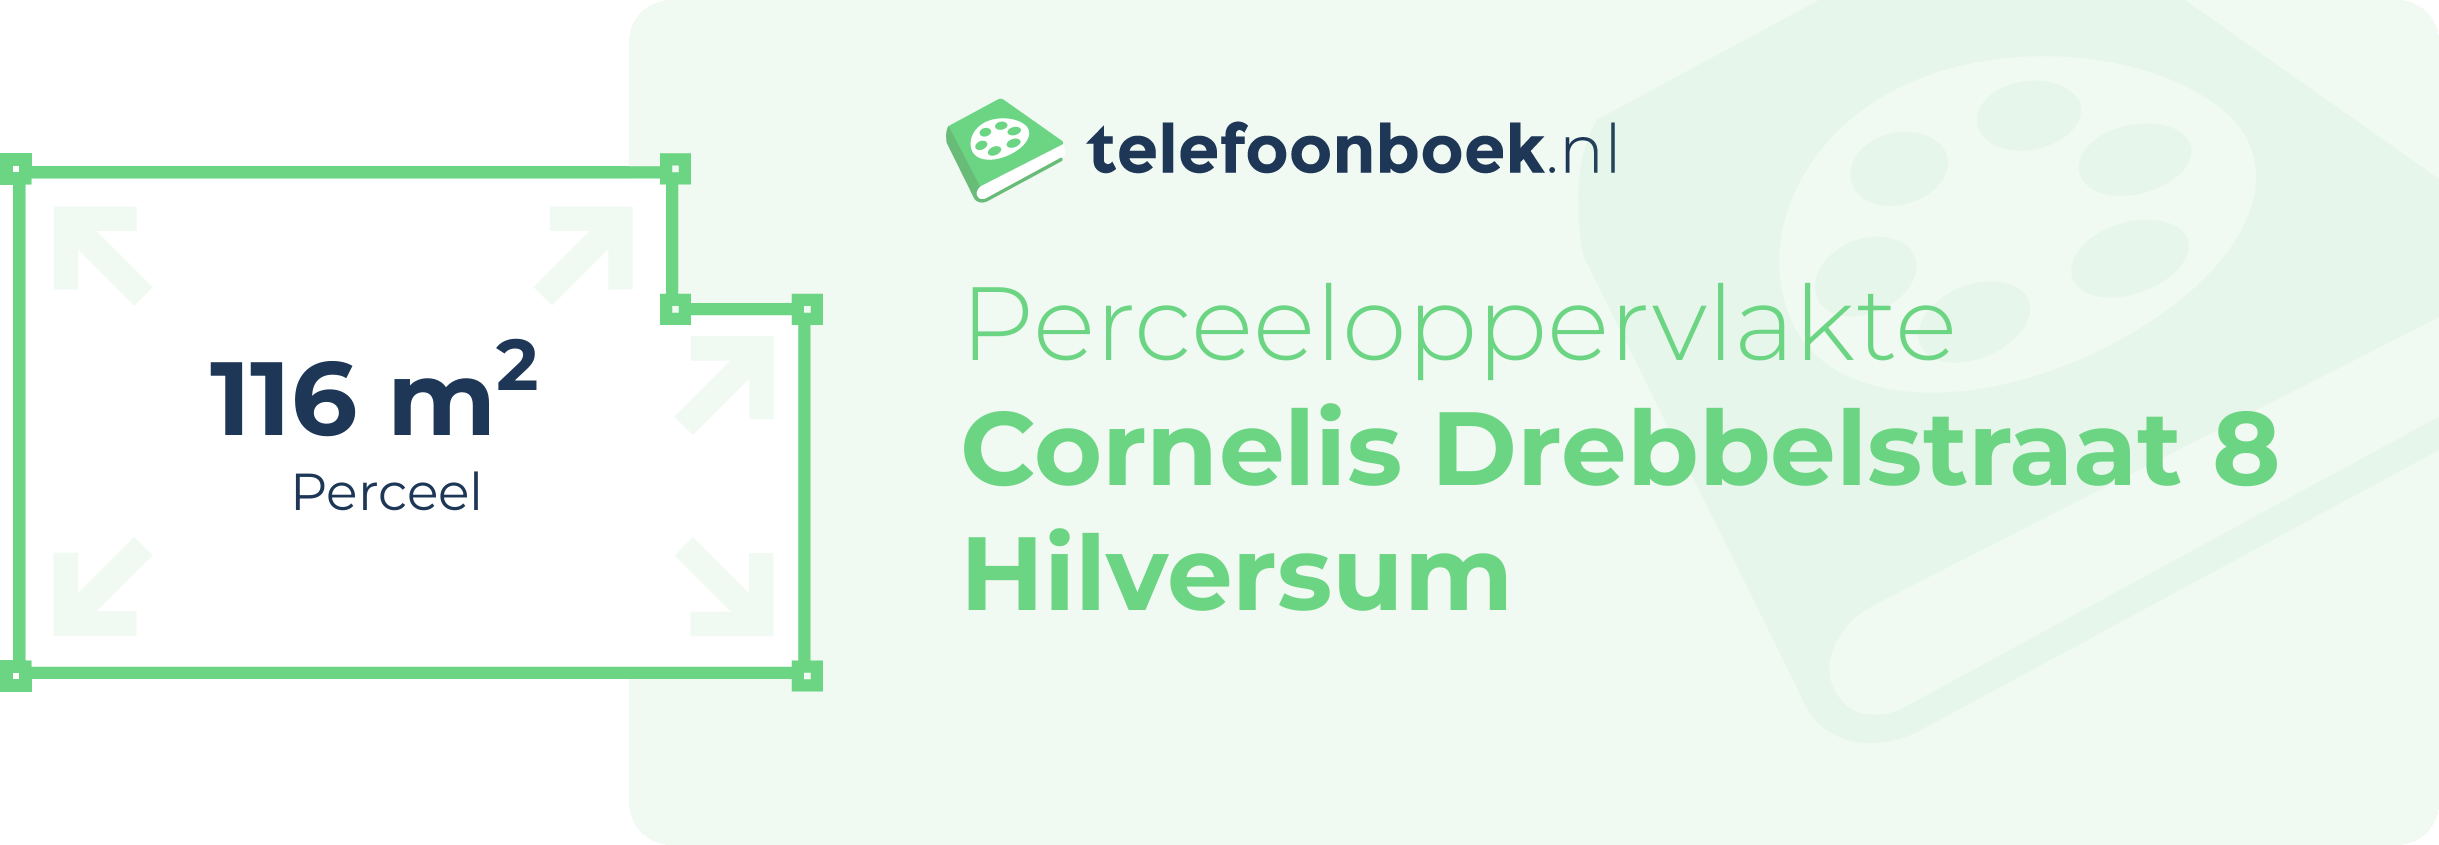 Perceeloppervlakte Cornelis Drebbelstraat 8 Hilversum